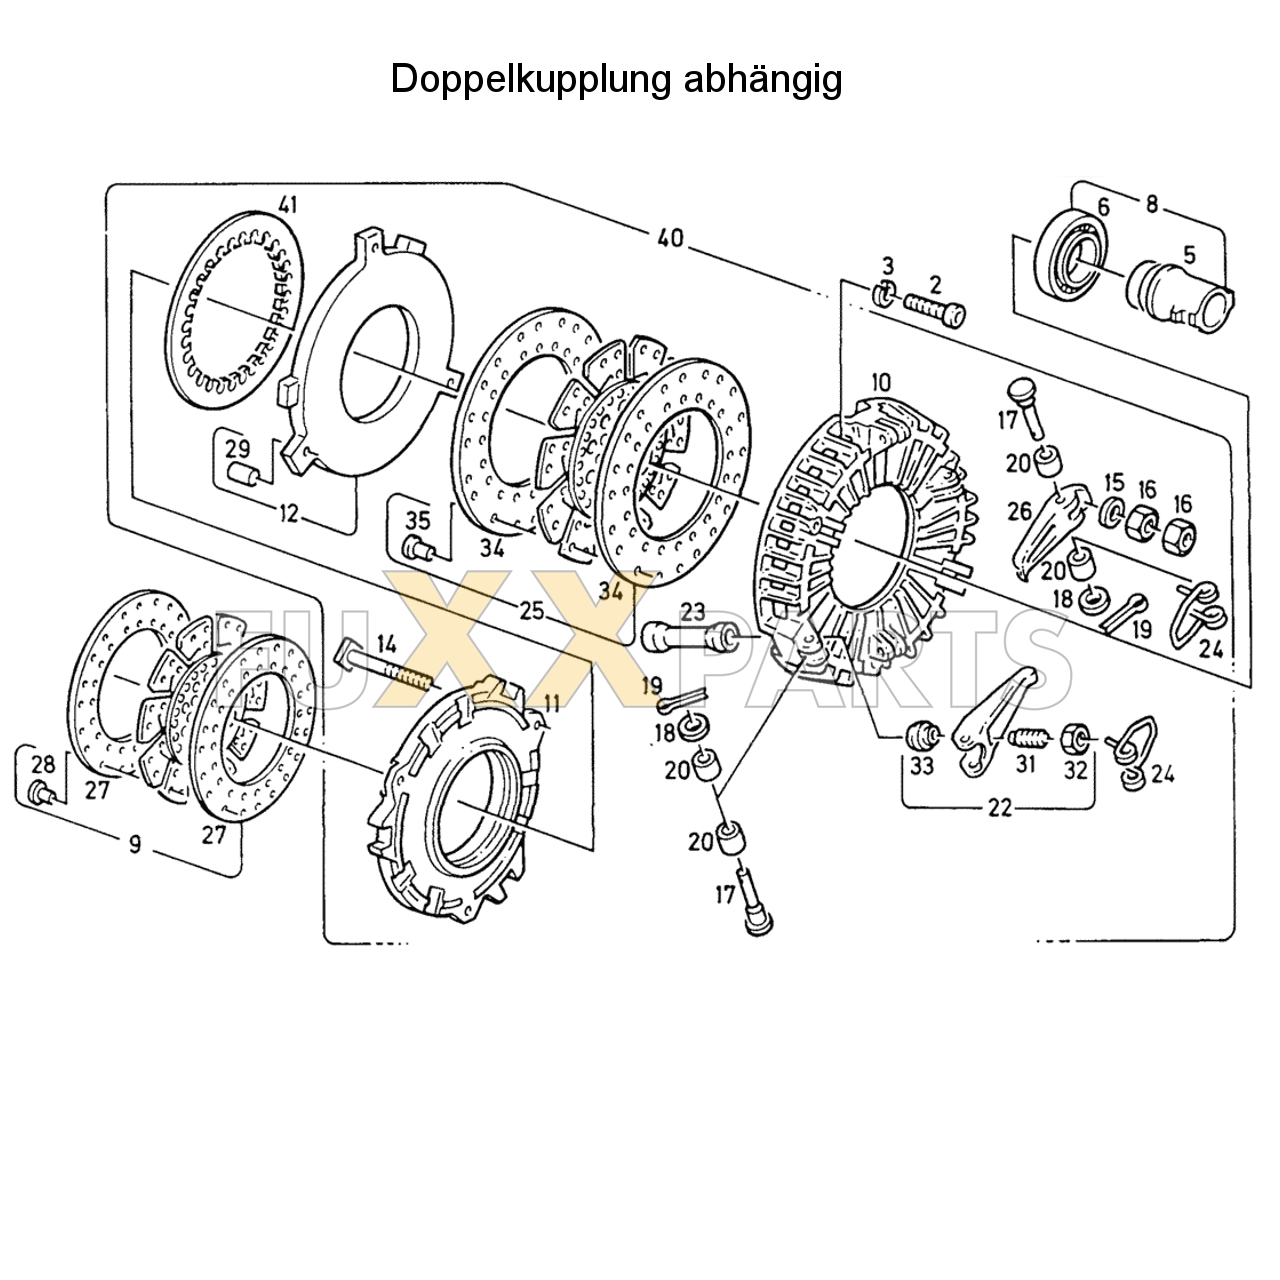 D 7807 Doppelkupplung abhängig